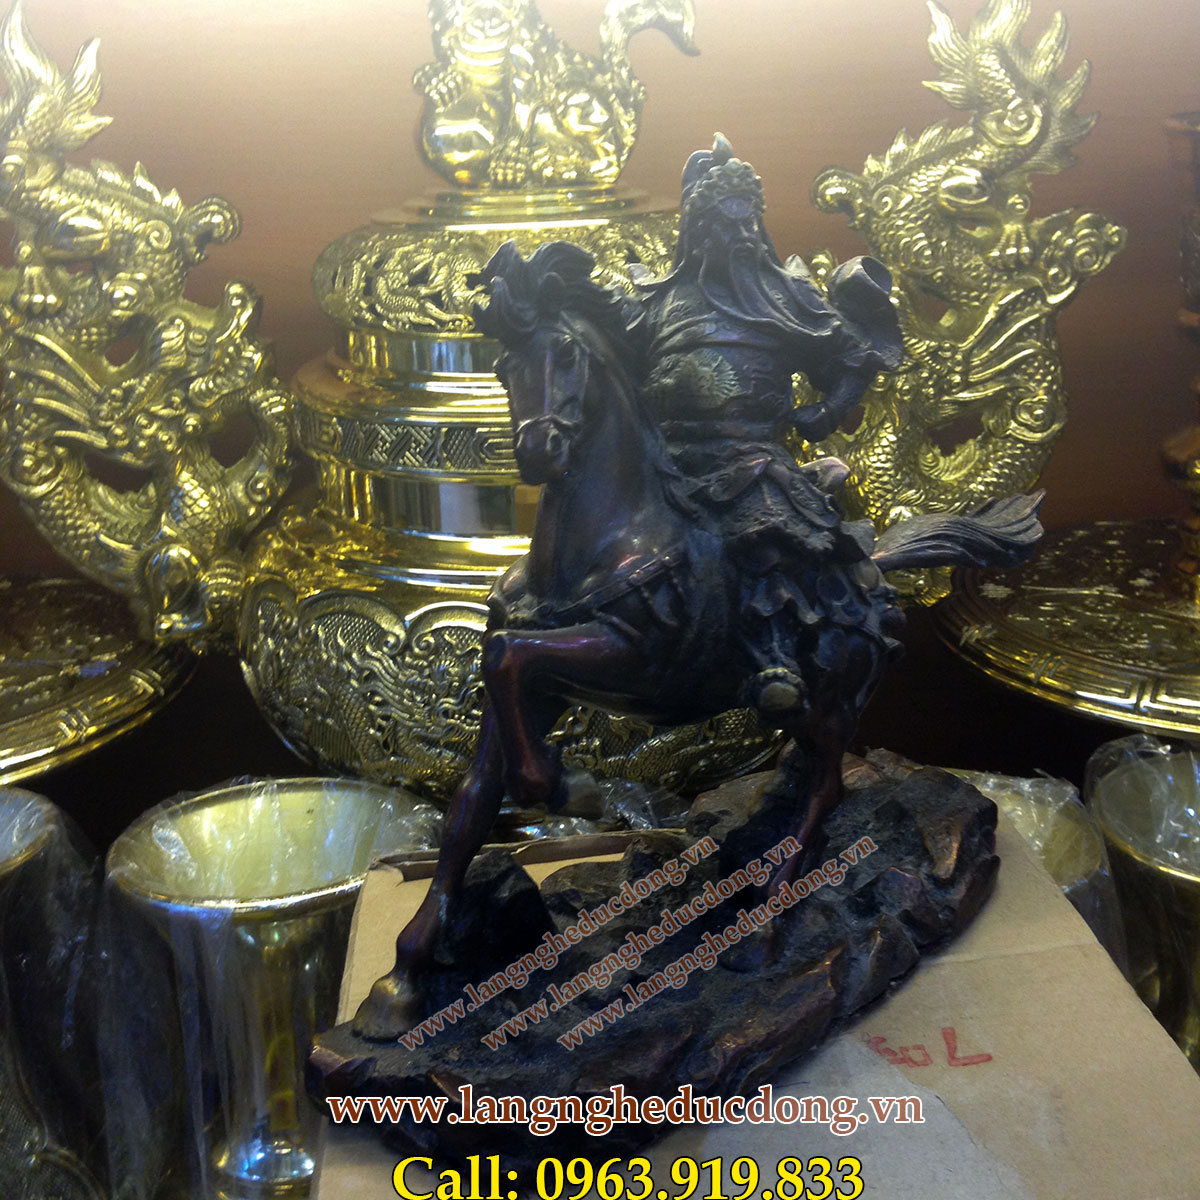 langngheducdong.vn - Tượng quan công cưỡi ngựa bằng đồng vàng giả cổ cao 25cm